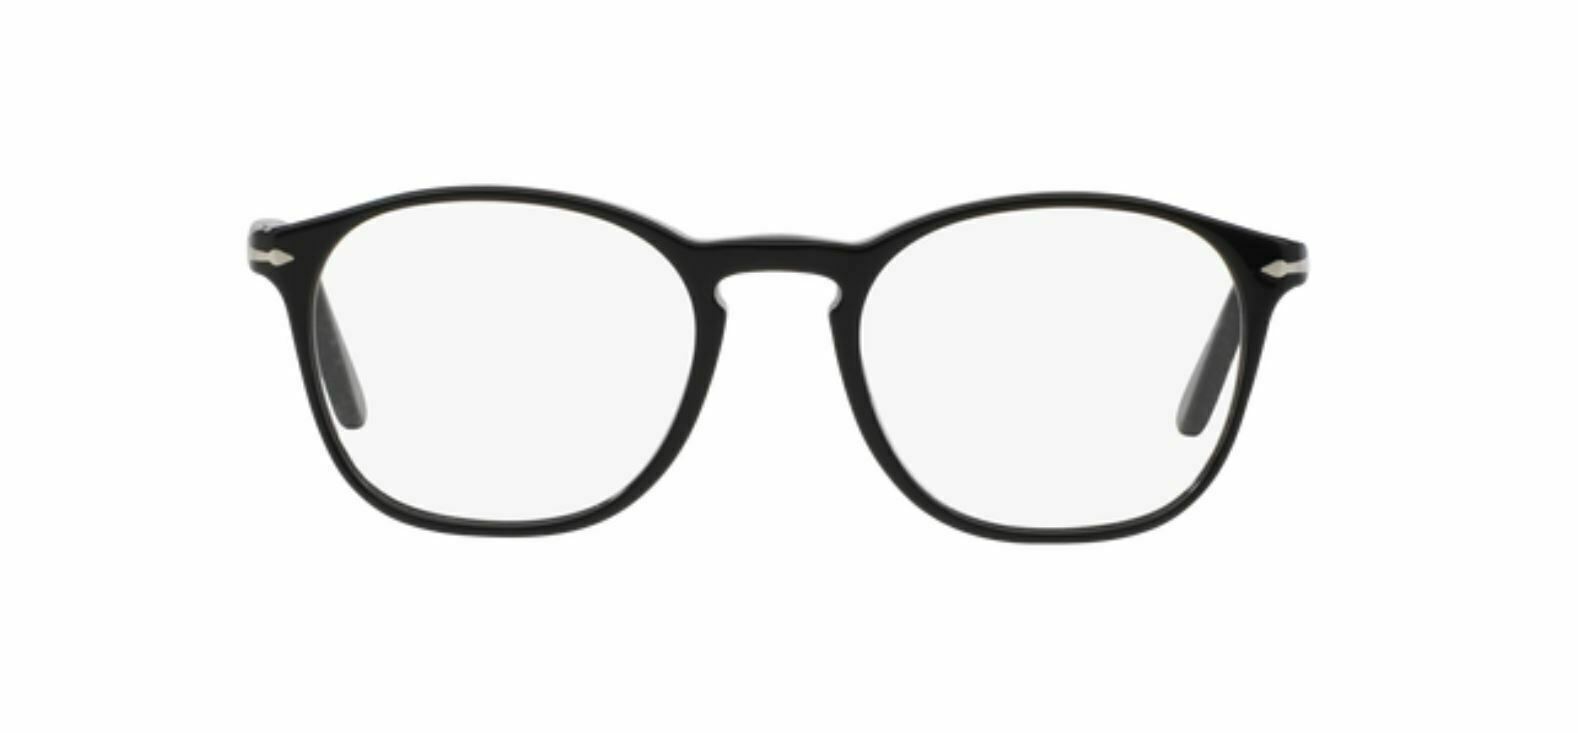 Persol 0PO3007 V 95 BLACK Eyeglasses